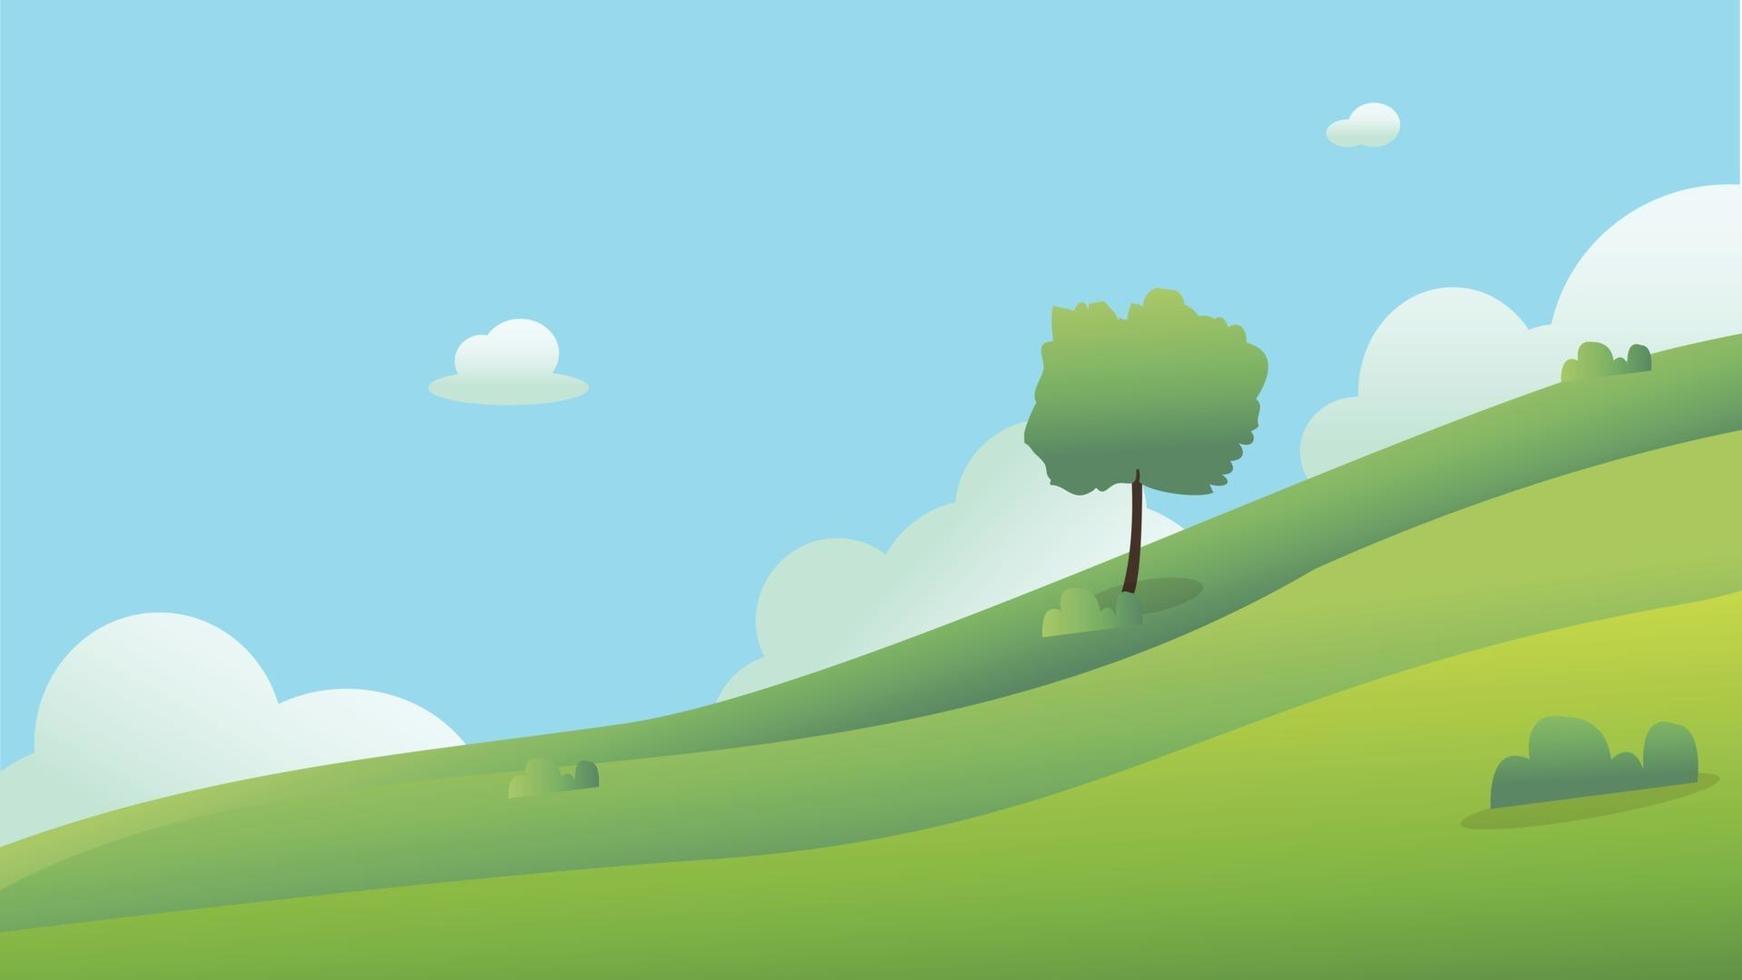 prachtige velden landschap met een dageraad, groene heuvels, felle kleur blauwe lucht, background.meadow landschap vector illustration.green veld met wolken en blauwe lucht